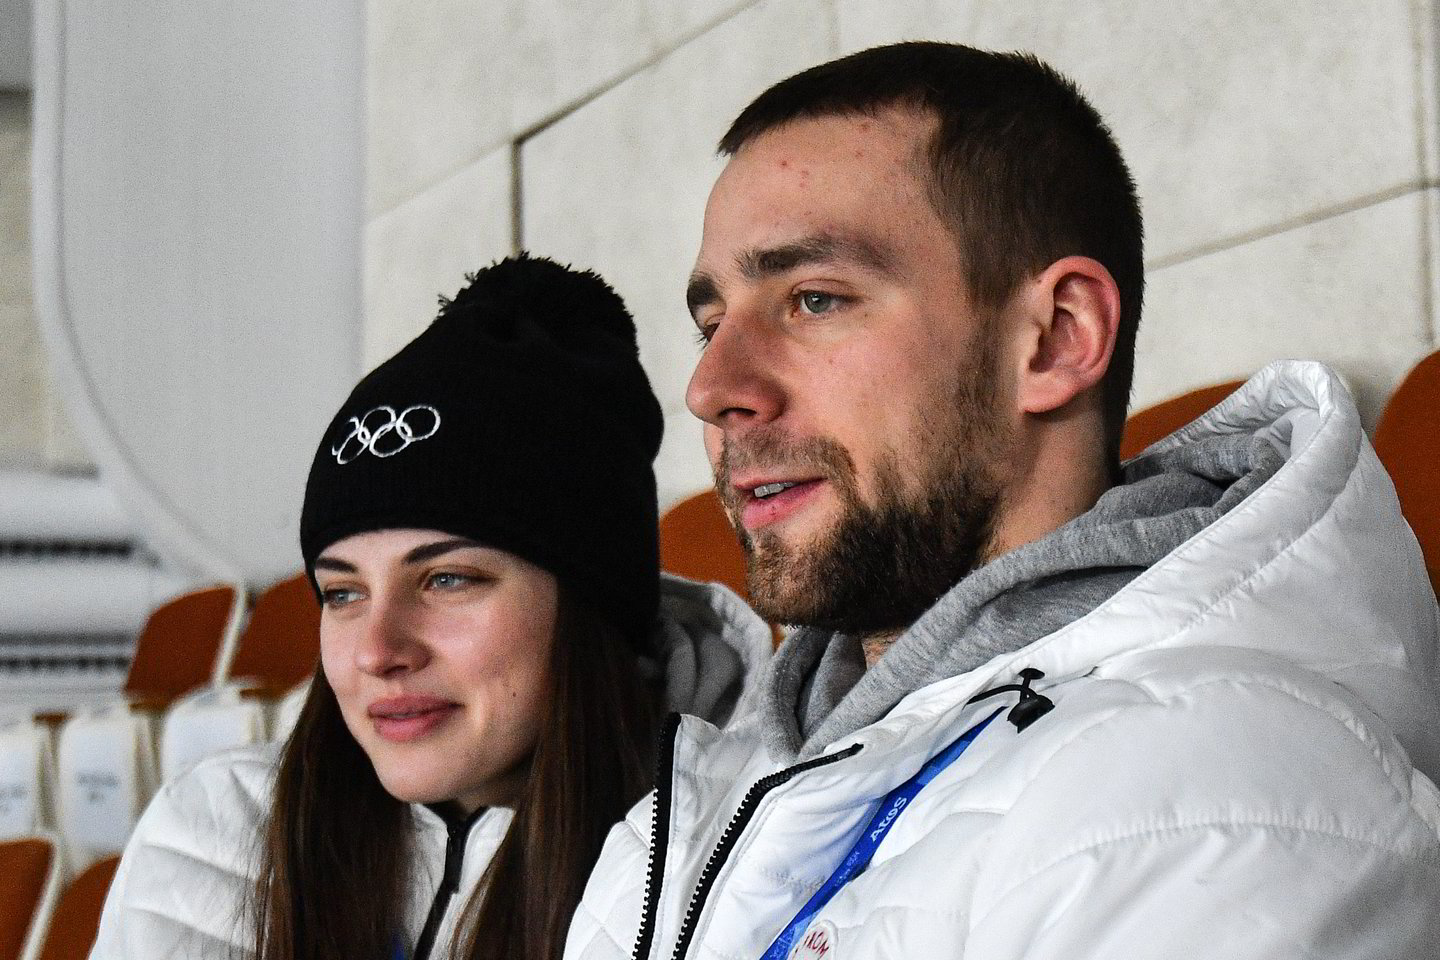  A.Krušelnickis su žmona A.Bryzgalova iškovojo akmenslydžio mišrių porų bronzą.<br> Scanpix nuotr.